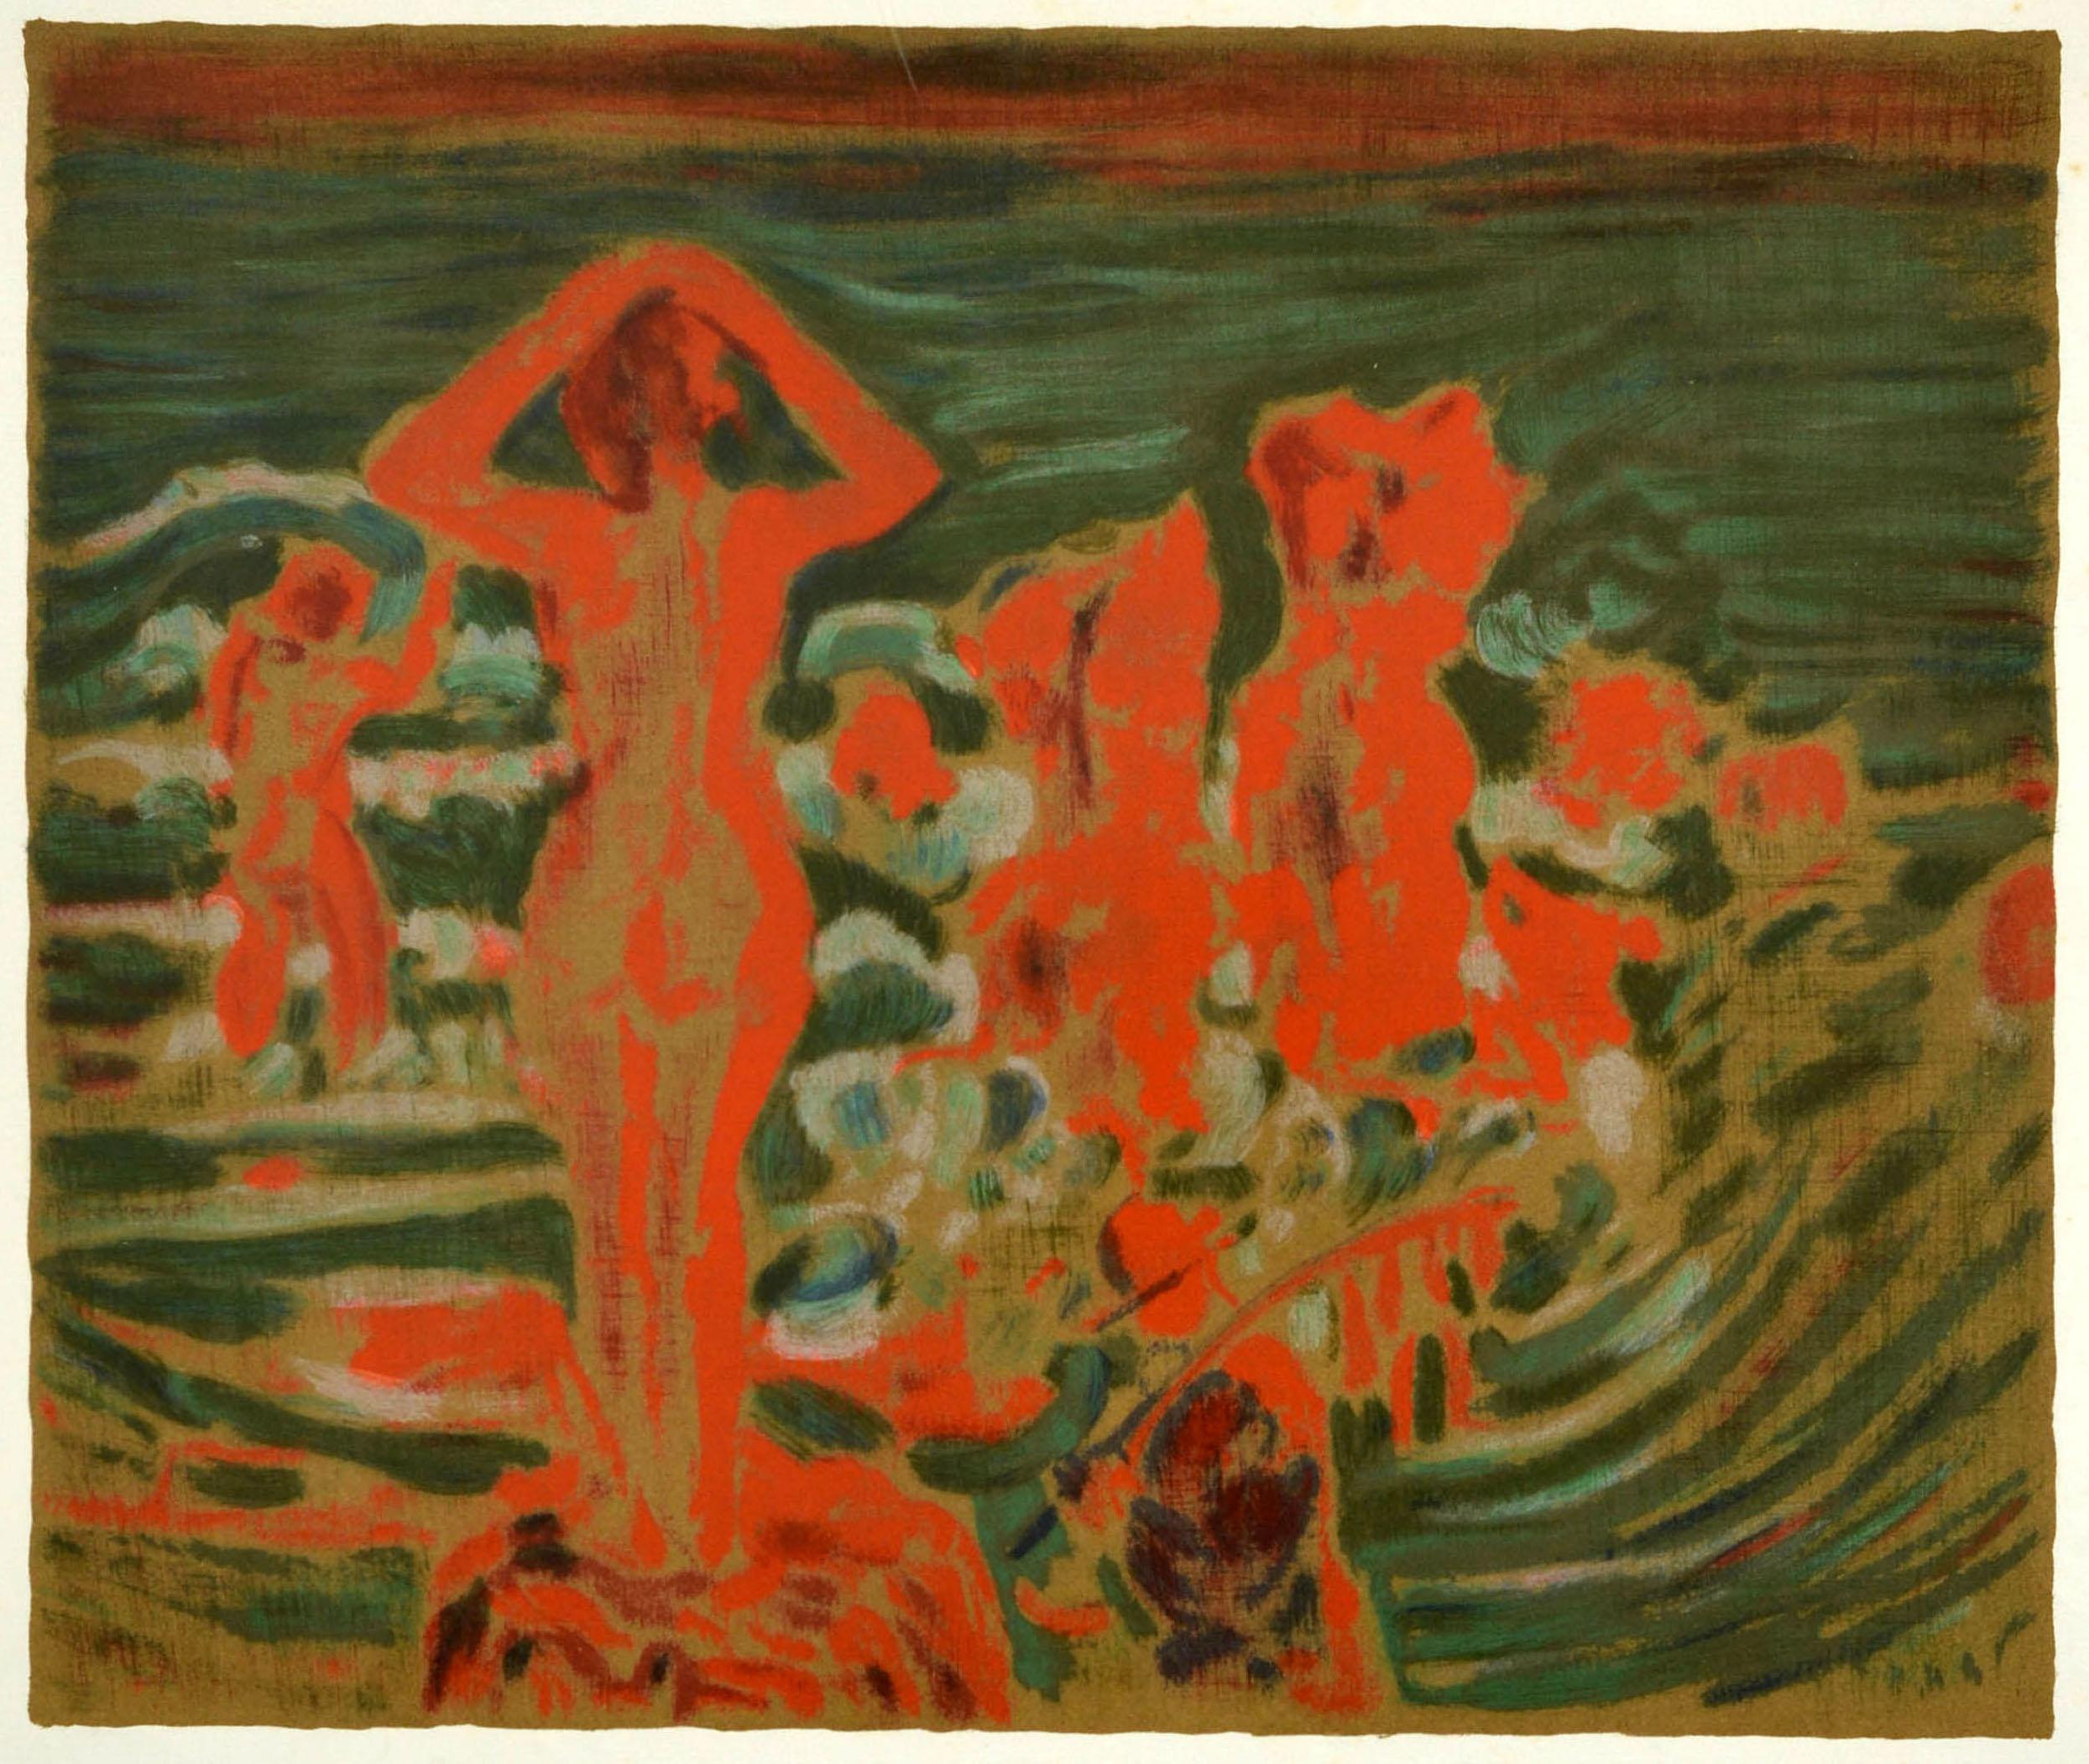 Affiche originale d'exposition d'art vintage - Rétrospective Larionov Maison de la Culture Nevers - tenue du 3 juin au 29 juillet 1972, présentant des œuvres d'art colorées de personnes nageant dans la mer par le peintre d'avant-garde russe Mikhail